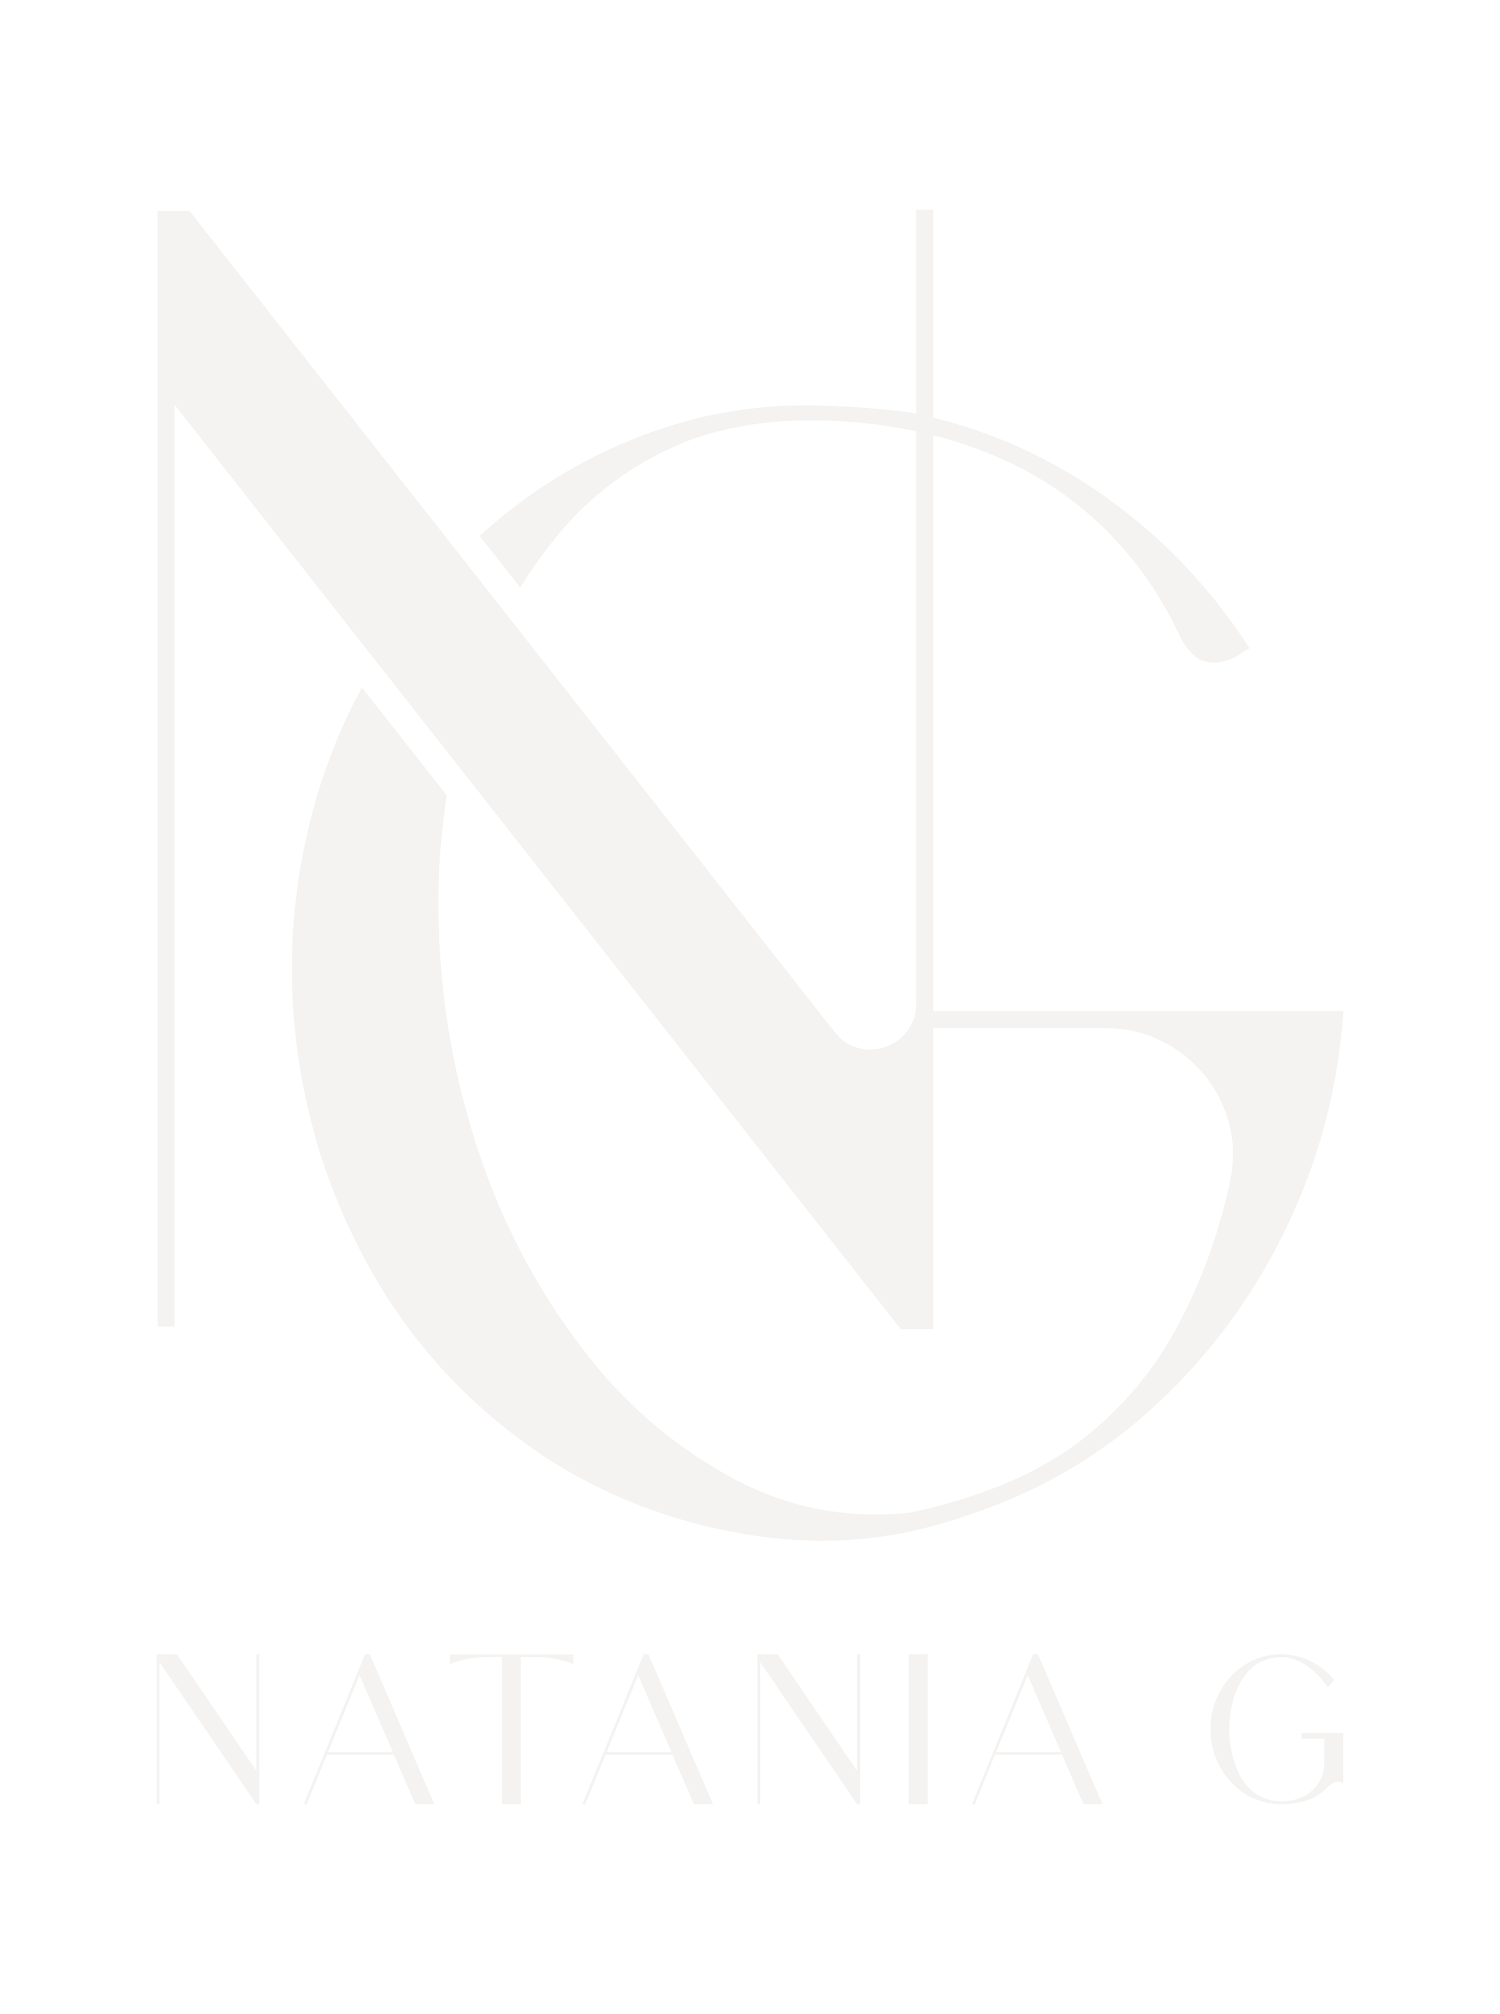 Natania G